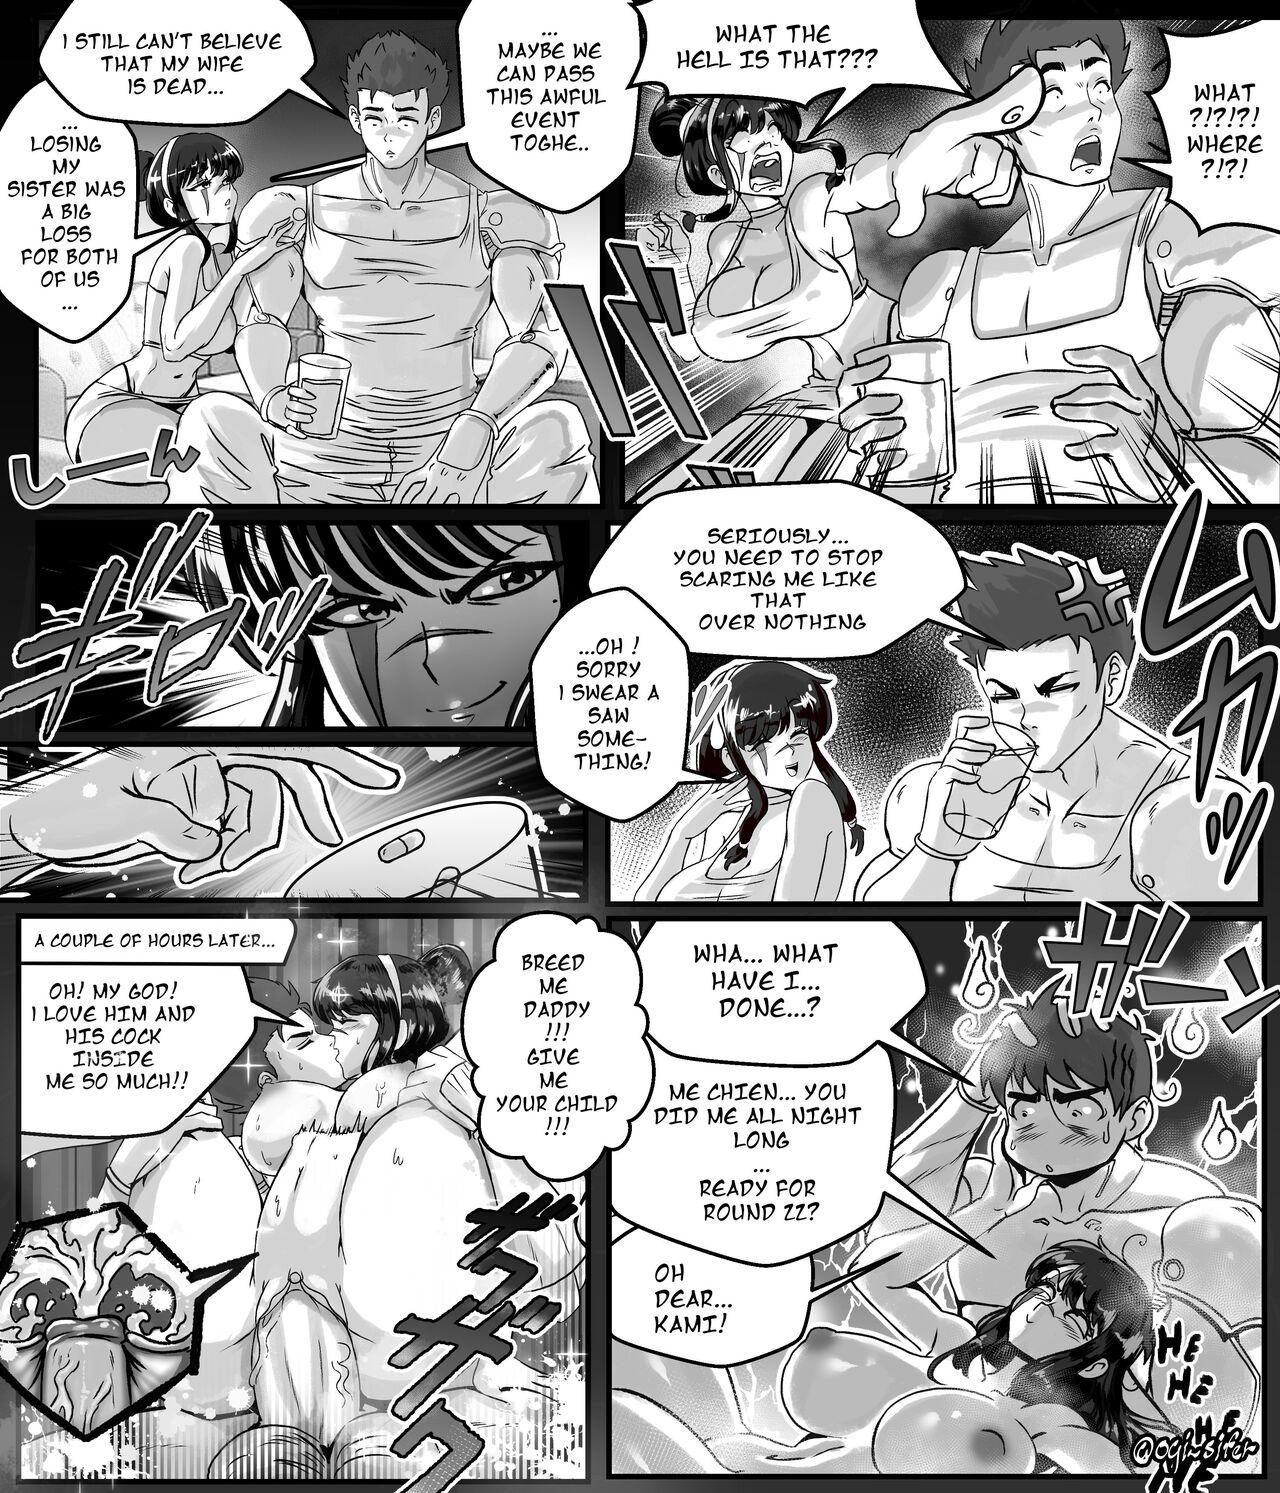 Hard Cock Ogi manga comics collection - Original Dragon ball z Dragon ball Dragon ball super Tribbing - Page 1